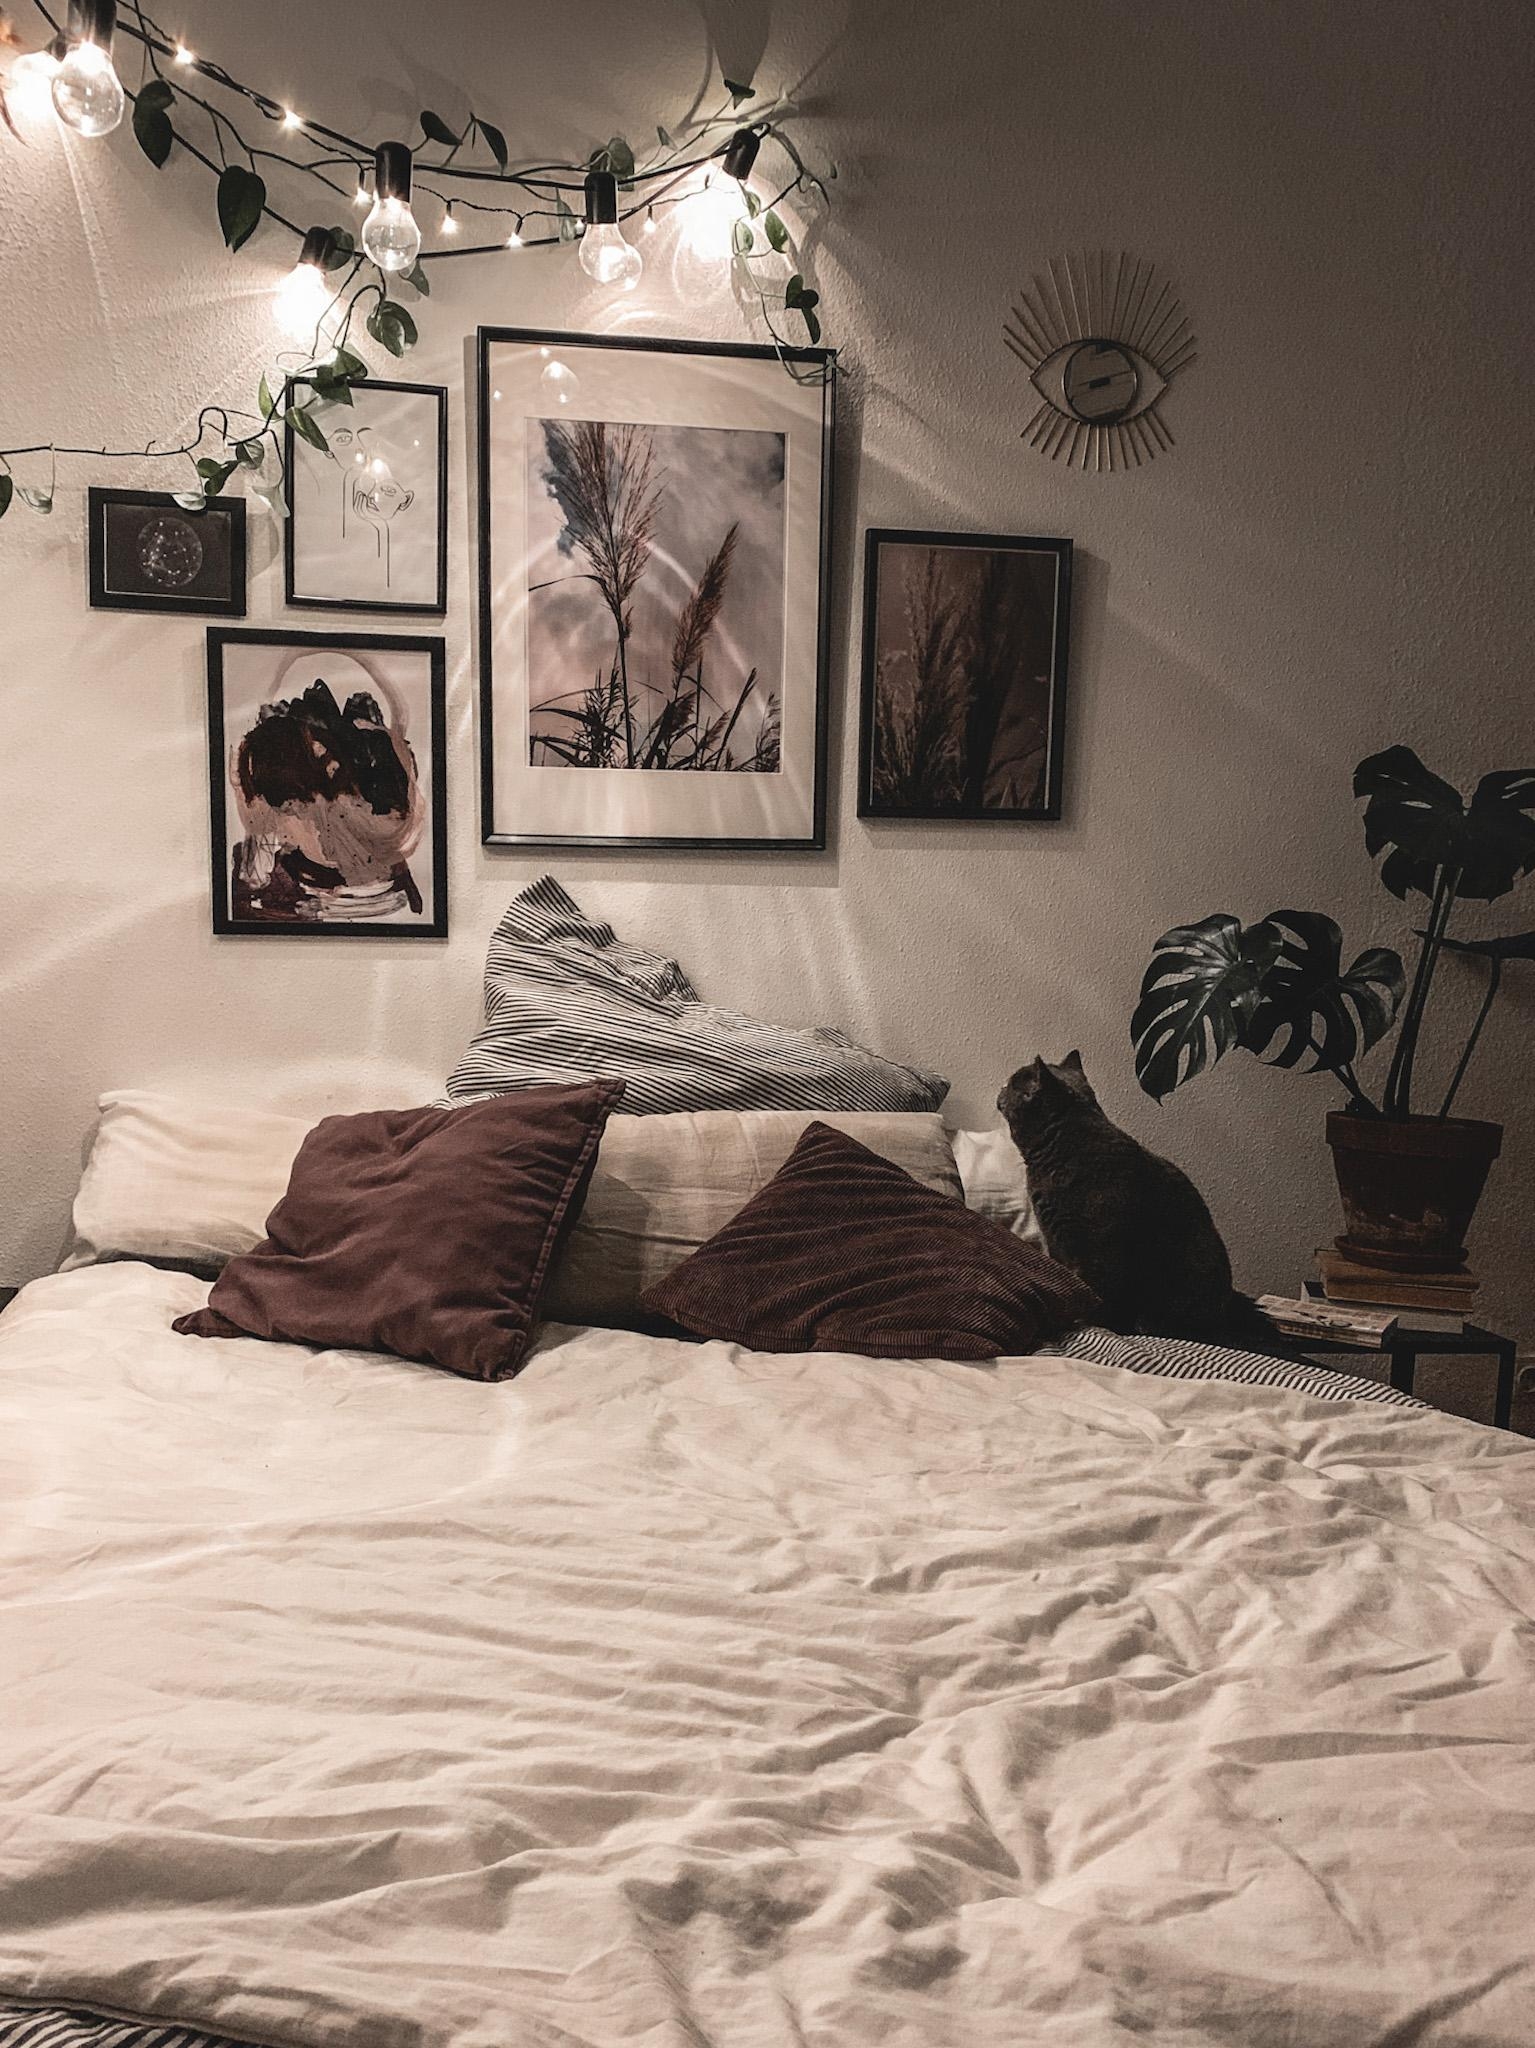 wir wünschen euch einen bezaubernden nacht! ✨ #interior #bedroominspo #bedroom